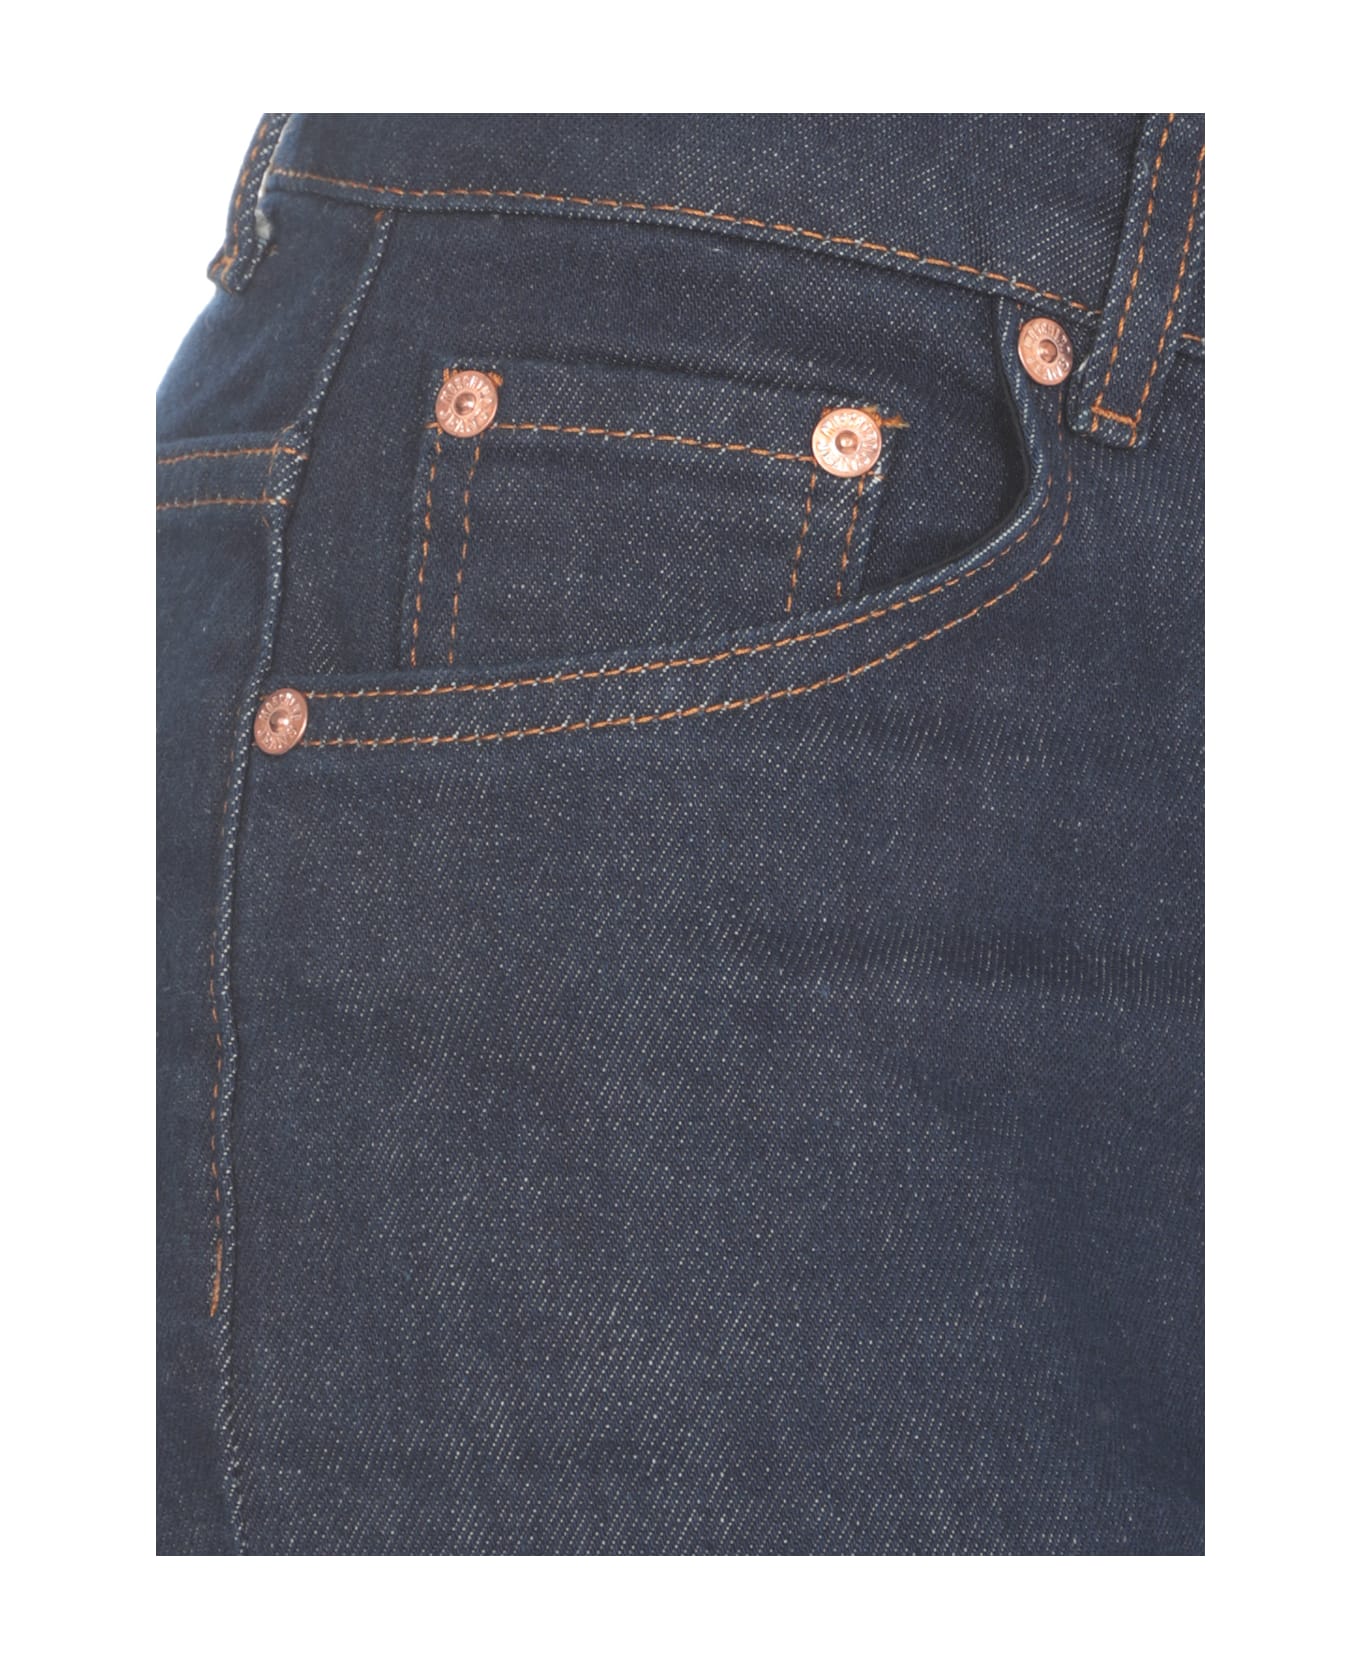 M05CH1N0 Jeans Cotton Jeans - Blue